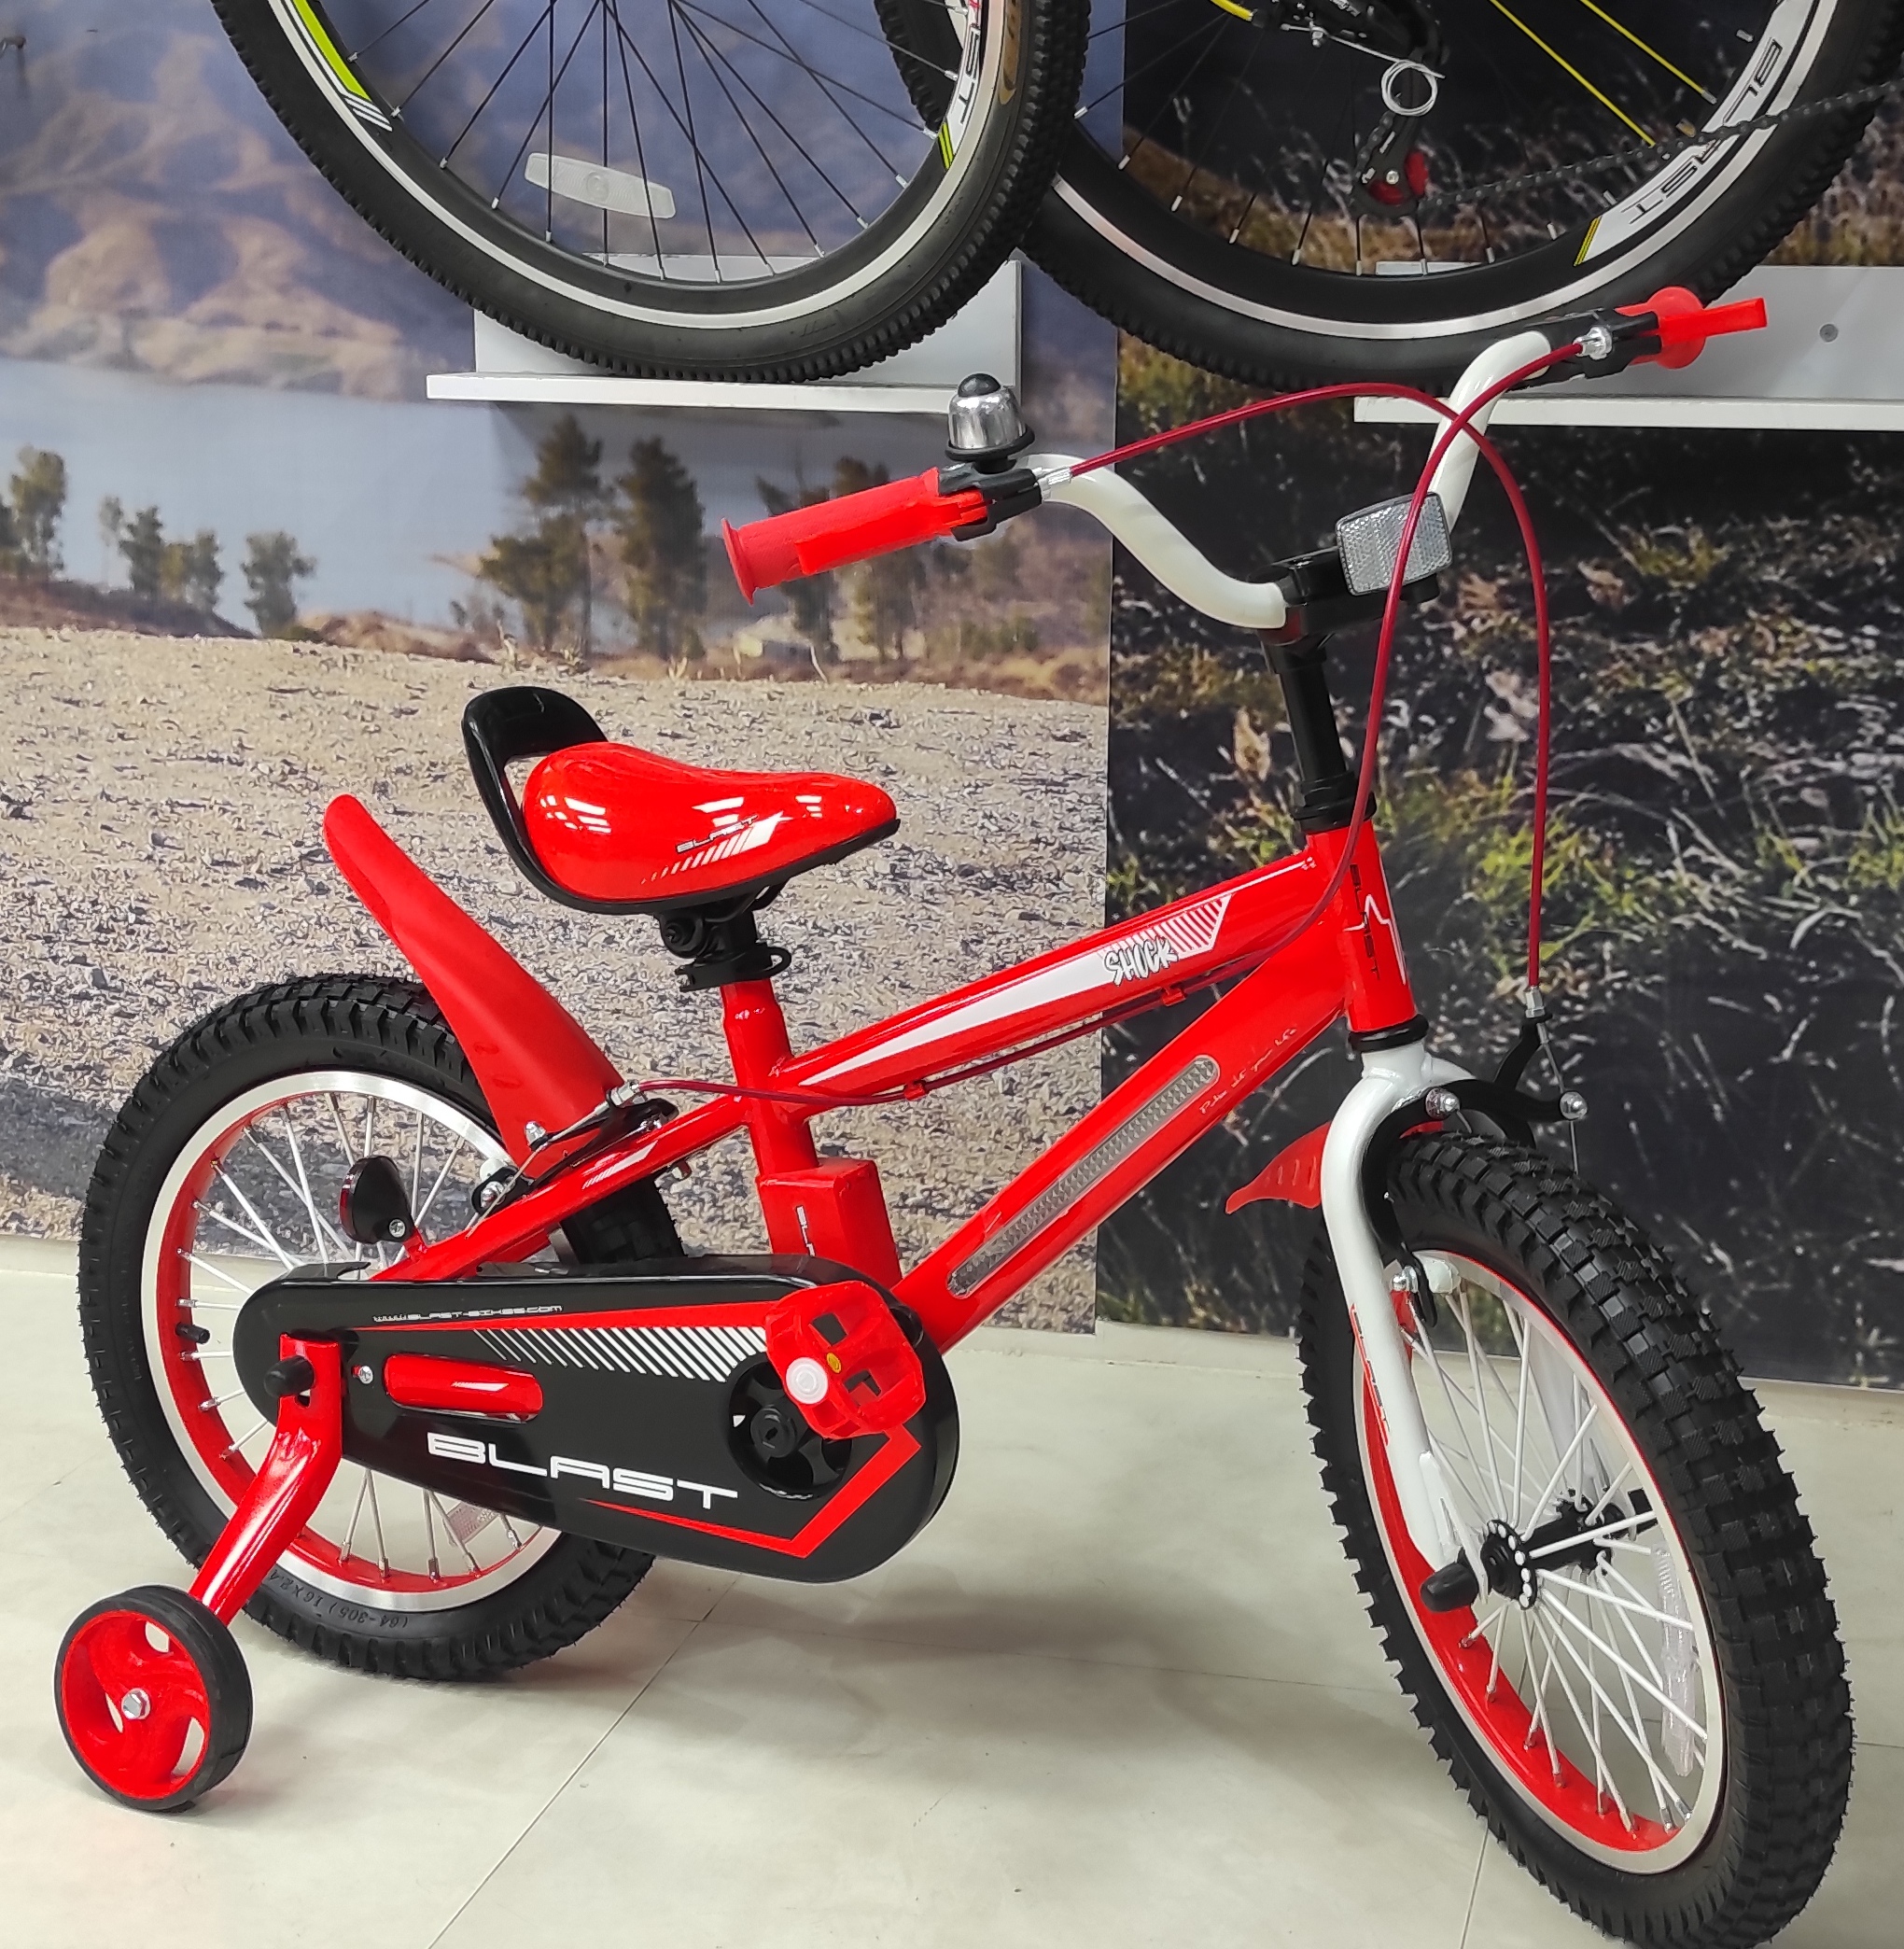 دوچرخه بچگانه بلست سایز 16 مدل shock قرمز